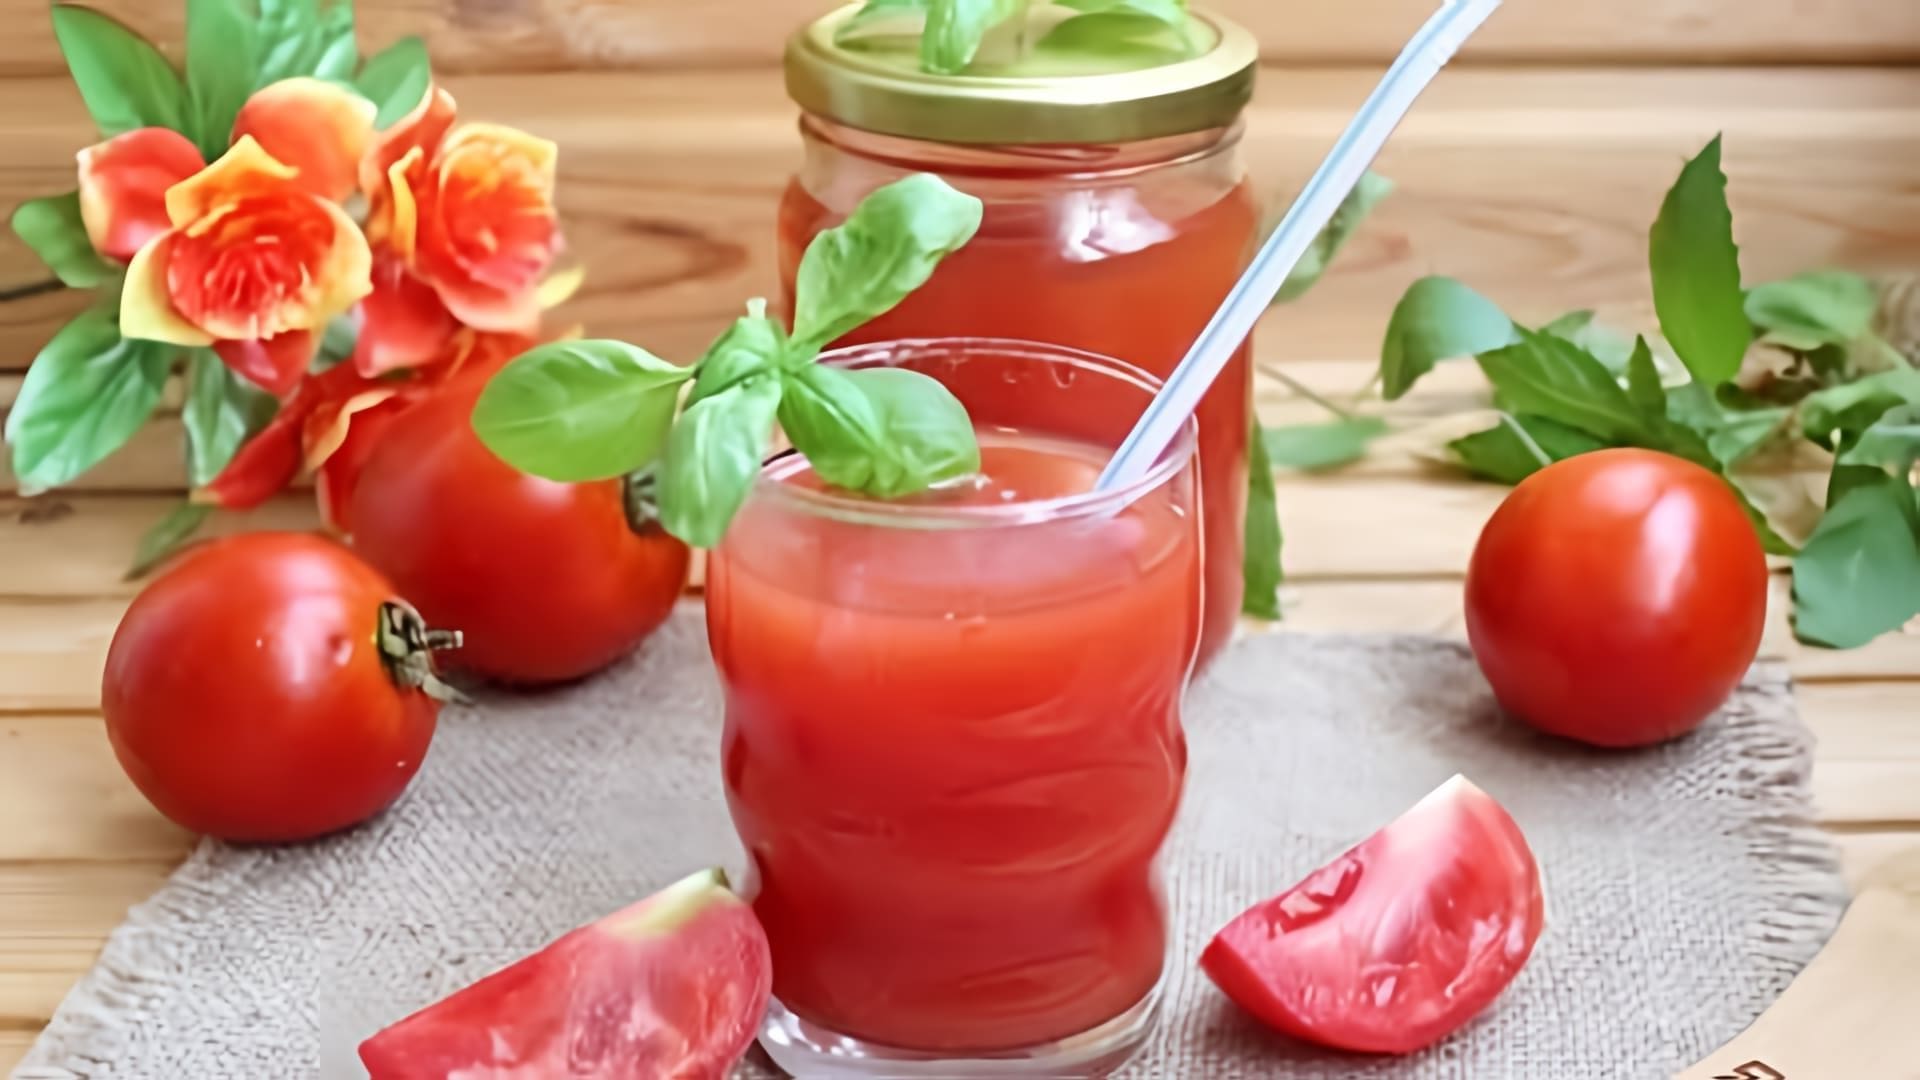 В этом видео демонстрируется процесс приготовления томатного сока в домашних условиях